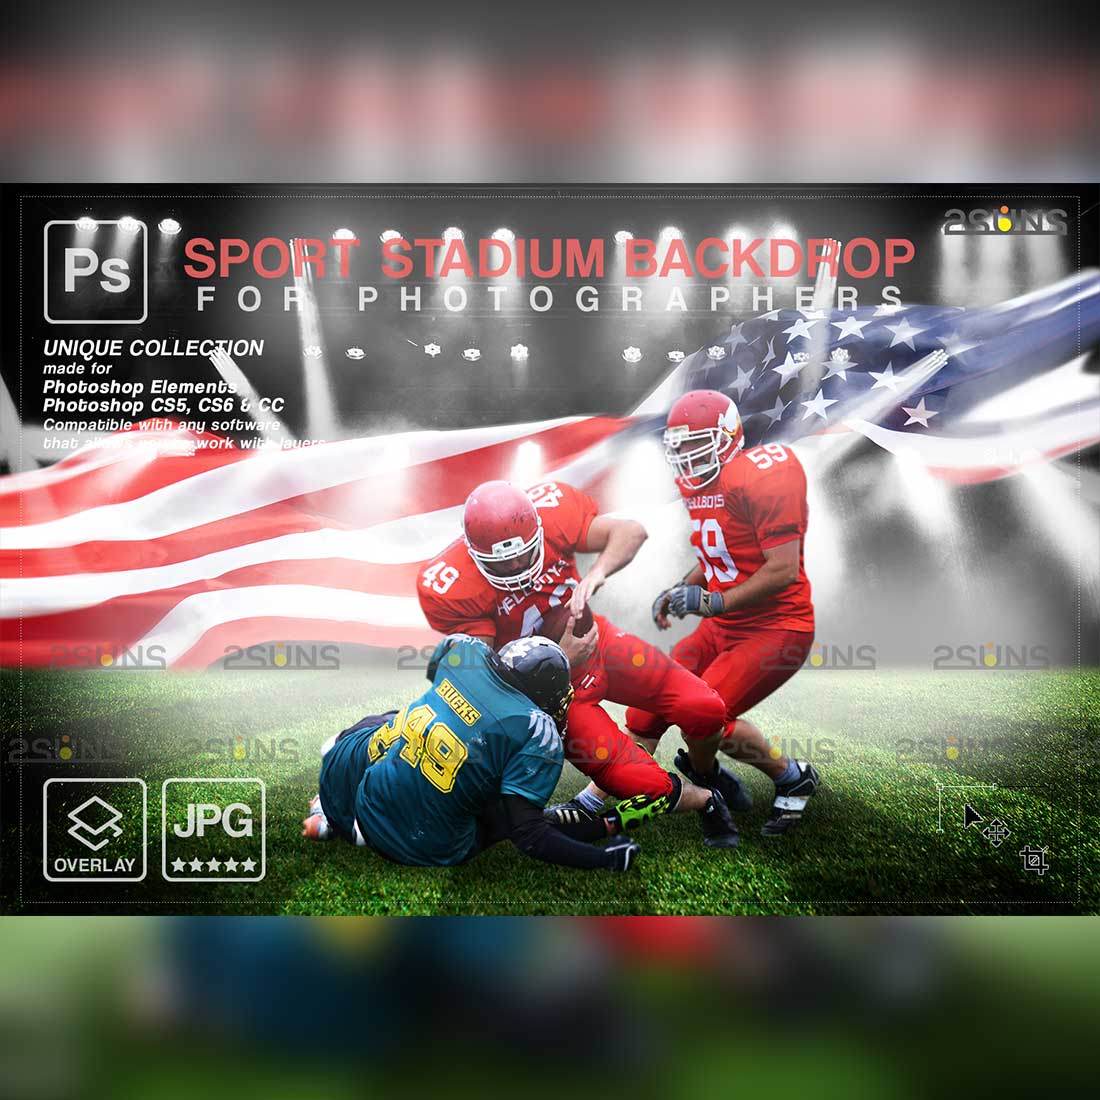 Stylish Football Backdrop Sports Digital Photoshop Overlay Cover Image.